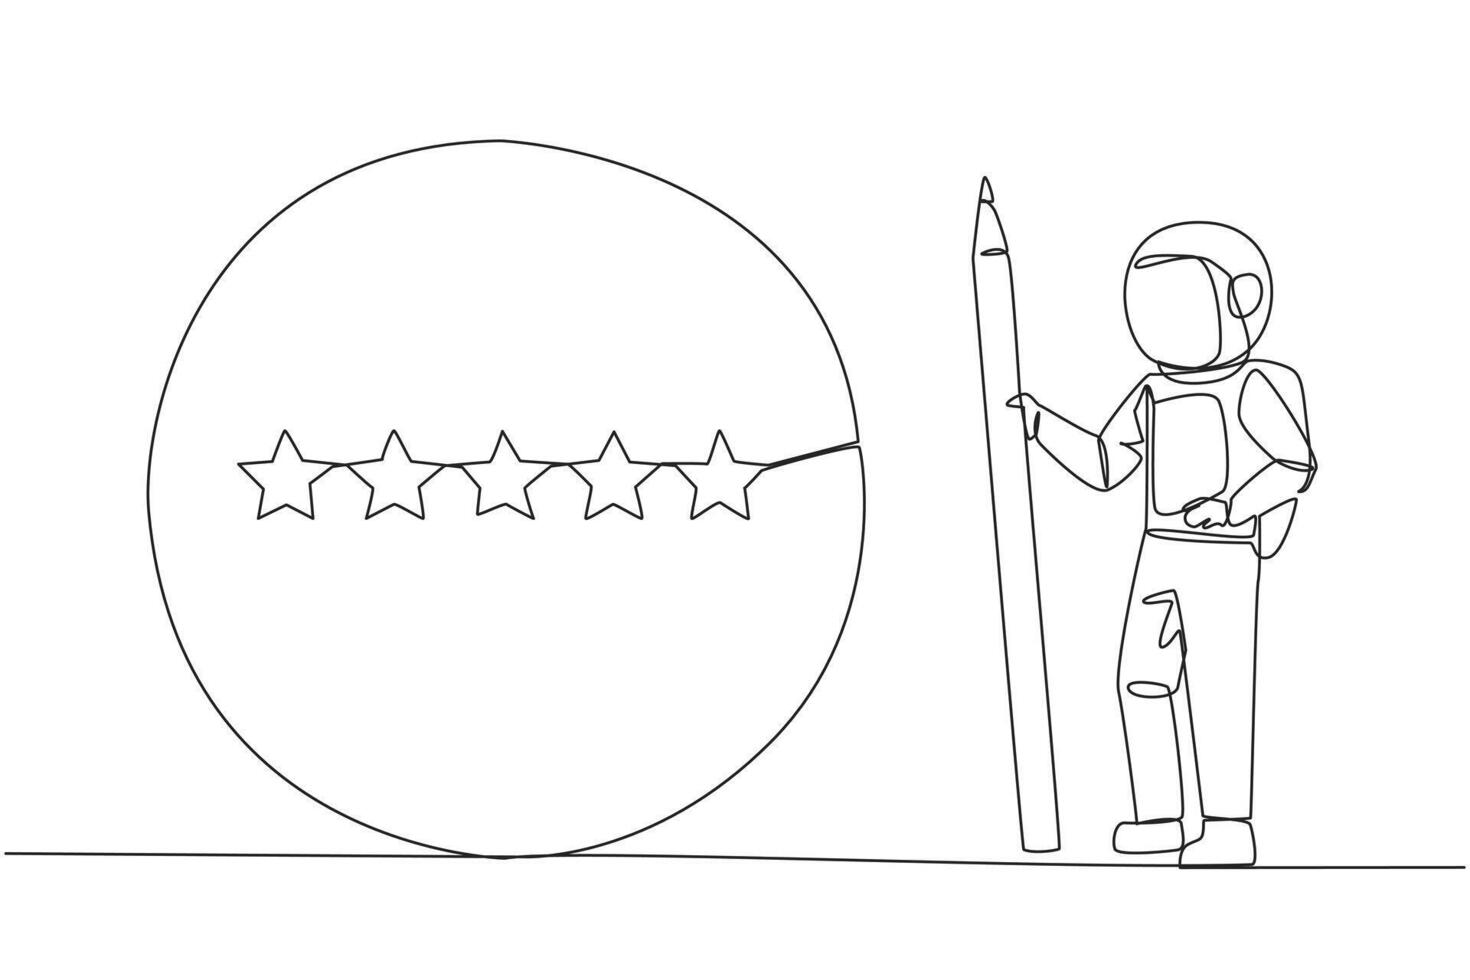 continu un ligne dessin astronaute supporter en portant grand crayon et suivant à est une grand cercle encerclant tout 5 étoiles. cinq étoile évaluation positif retour. cosmique. Célibataire ligne dessiner vecteur illustration